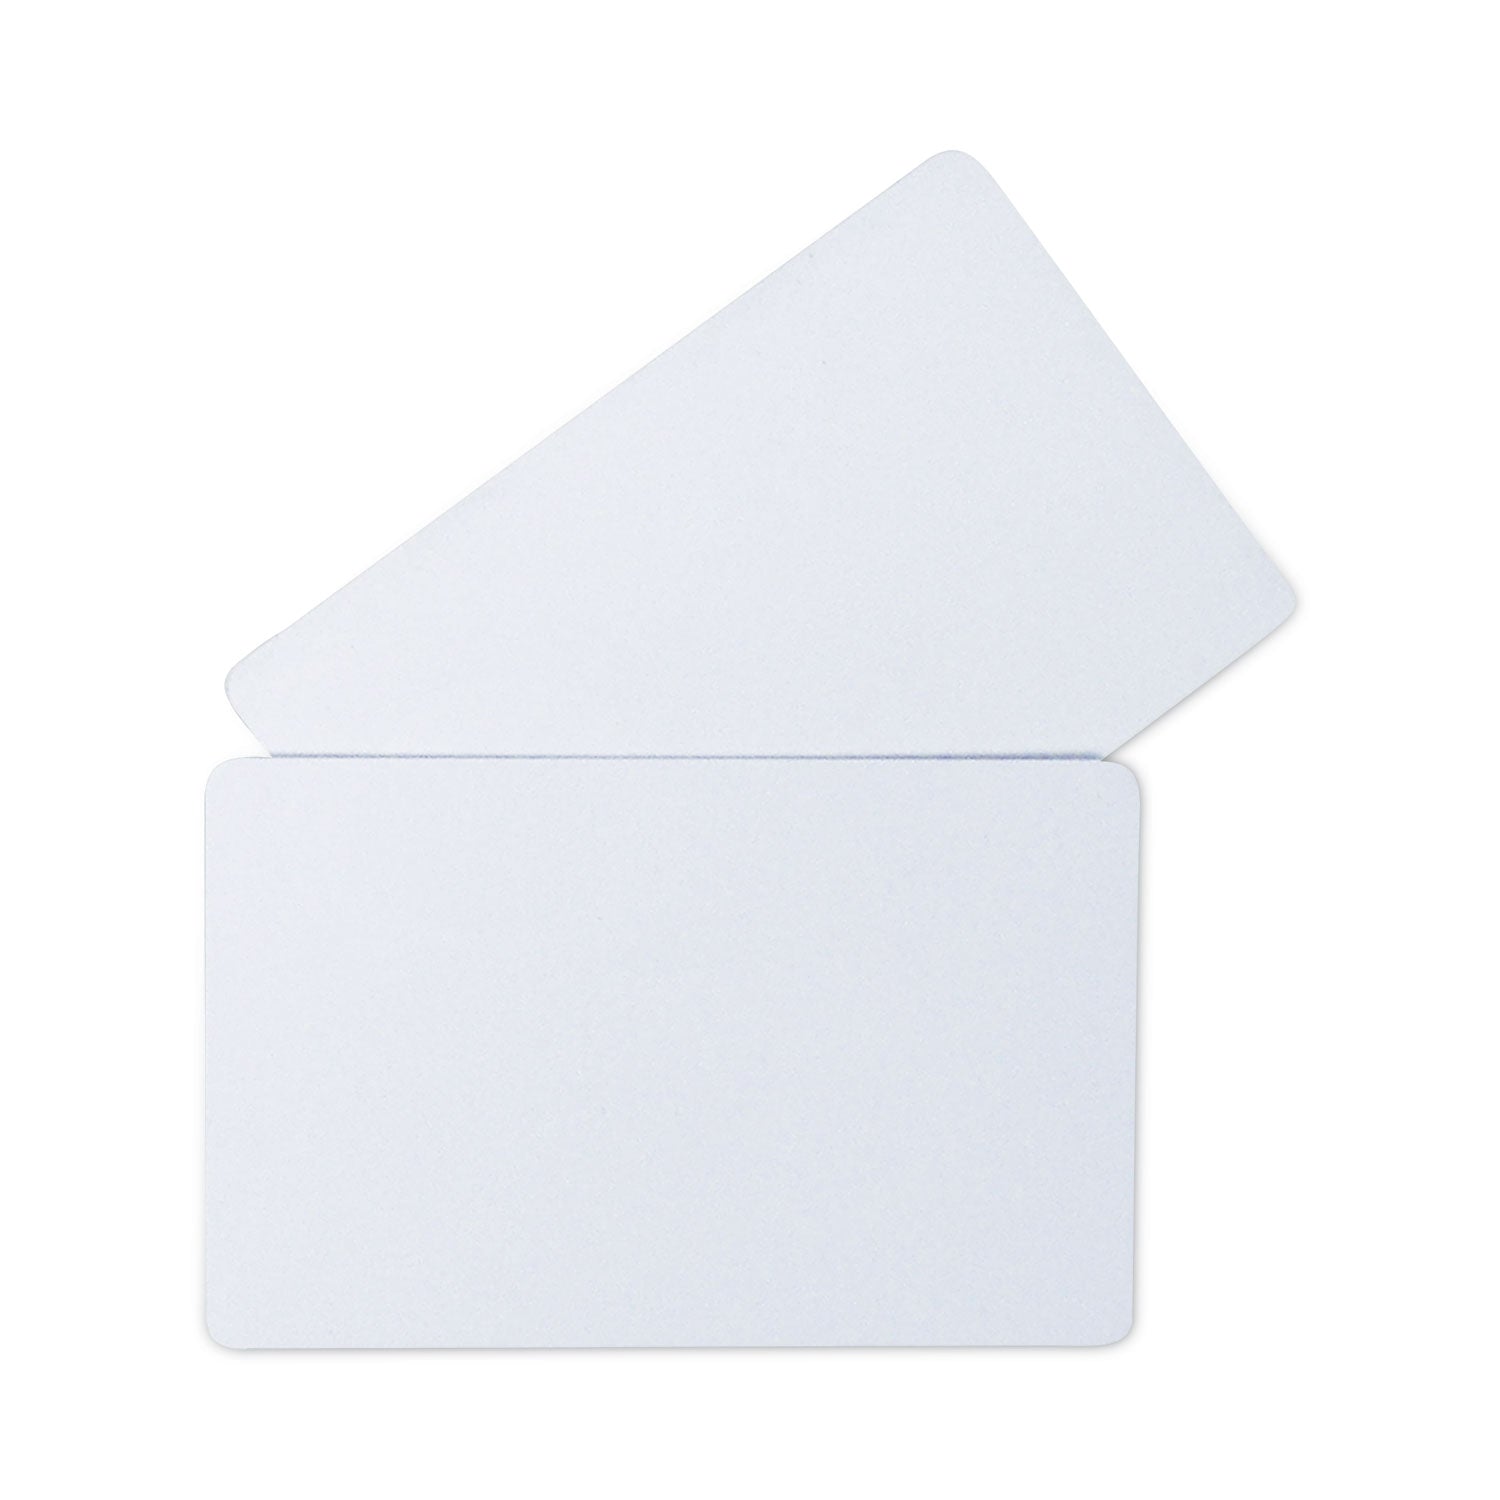 PVC ID Badge Card, 3.38 x 2.13, White, 100/Pack - 